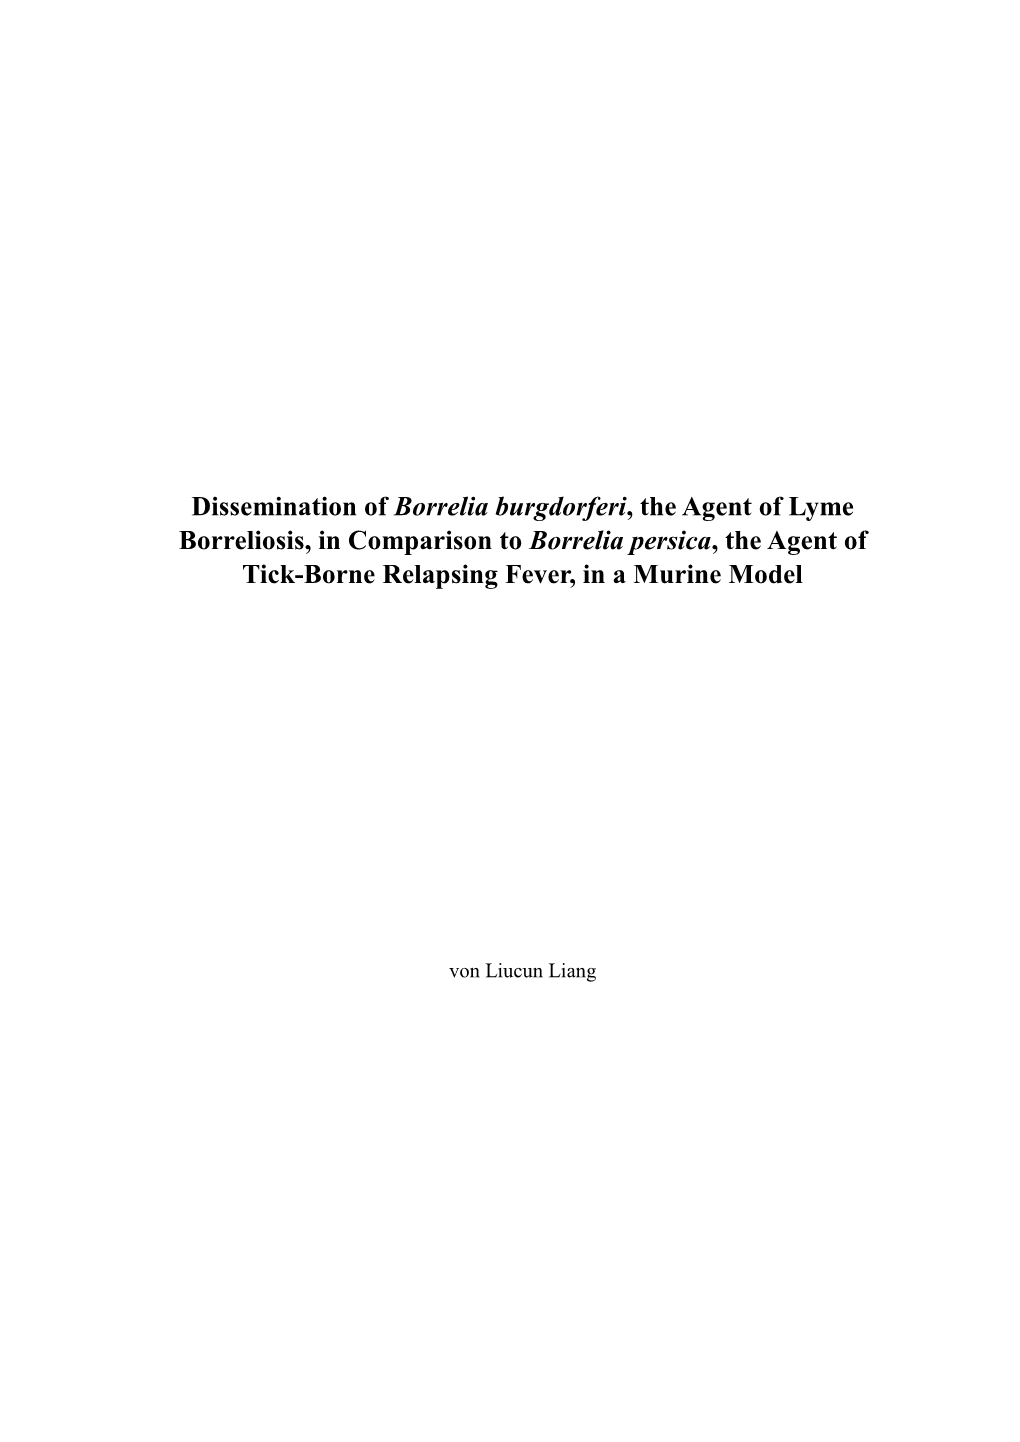 Dissemination of Borrelia Burgdorferi, the Agent of Lyme Borreliosis, in Comparison to Borrelia Persica, the Agent of Tick-Borne Relapsing Fever, in a Murine Model